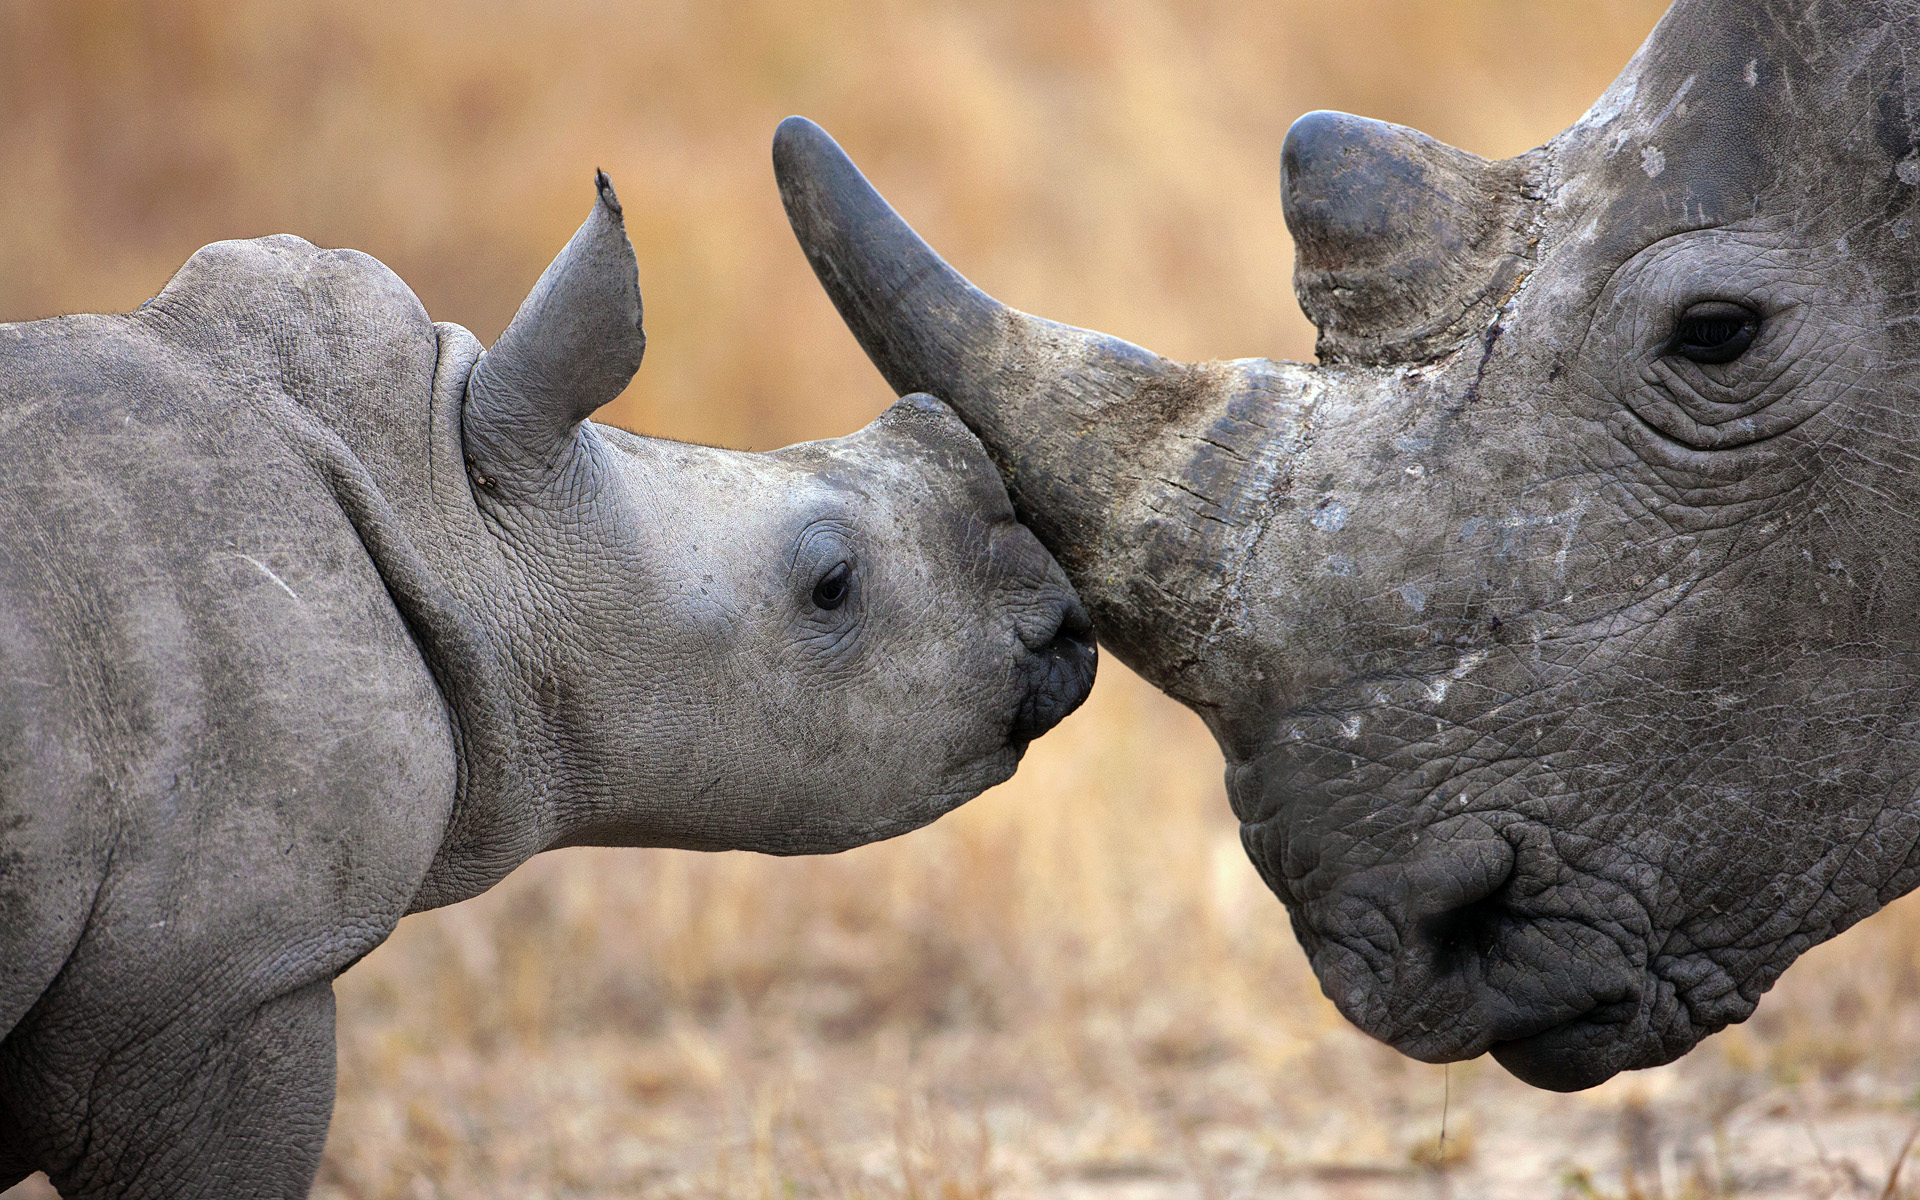 fond d'écran rhinocéros,rhinocéros,rhinocéros blanc,rhinocéros indien,rhinocéros noir,animal terrestre